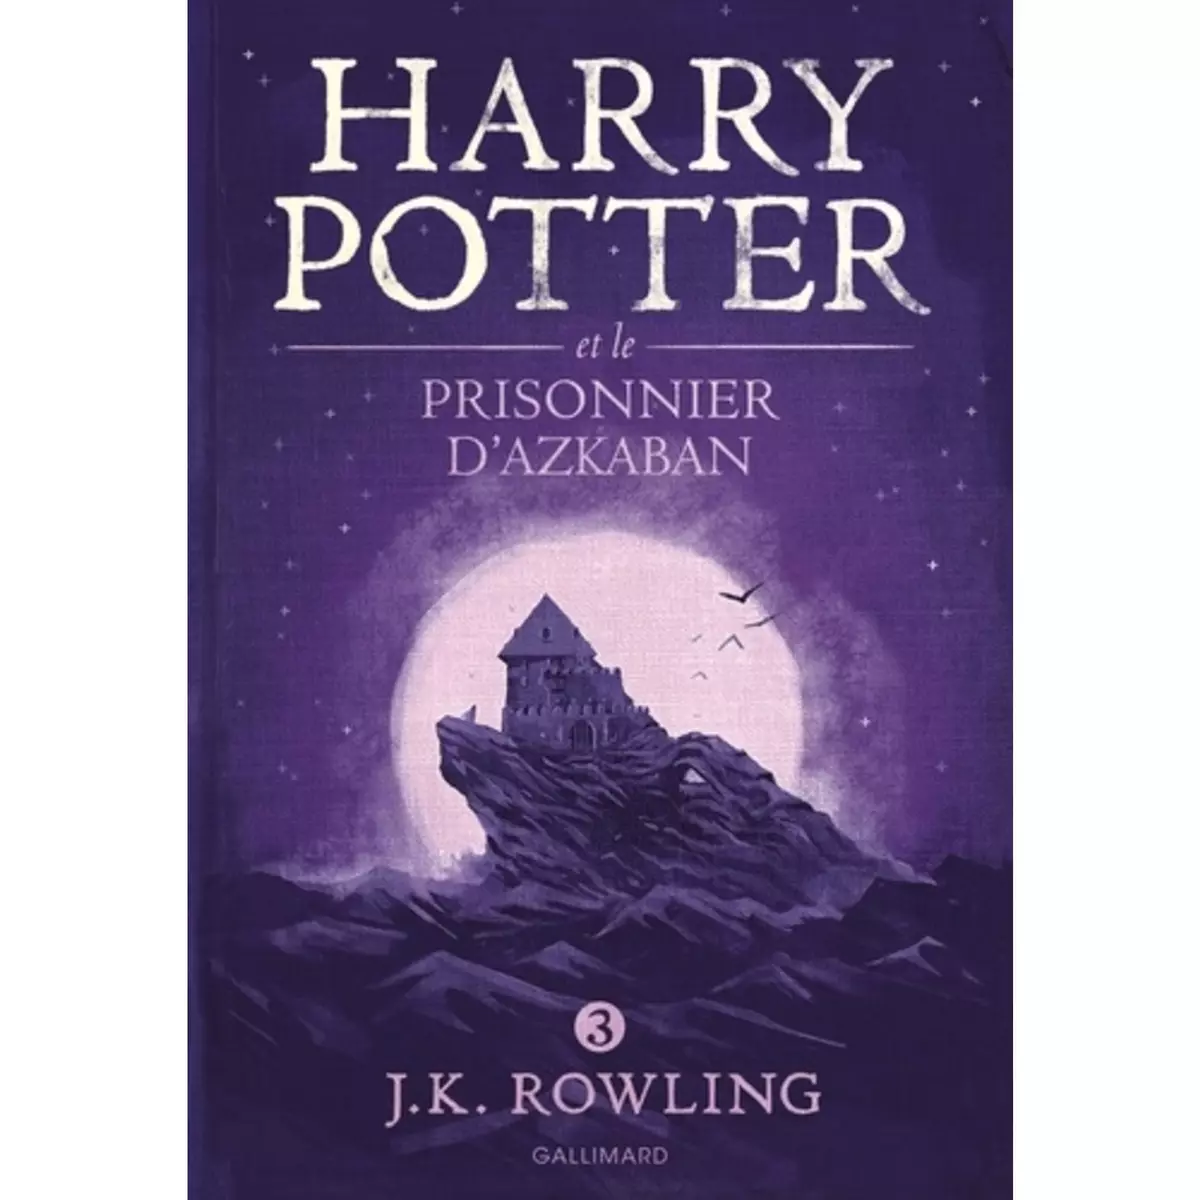  HARRY POTTER TOME 3 : HARRY POTTER ET LE PRISONNIER D'AZKABAN, Rowling J.K.